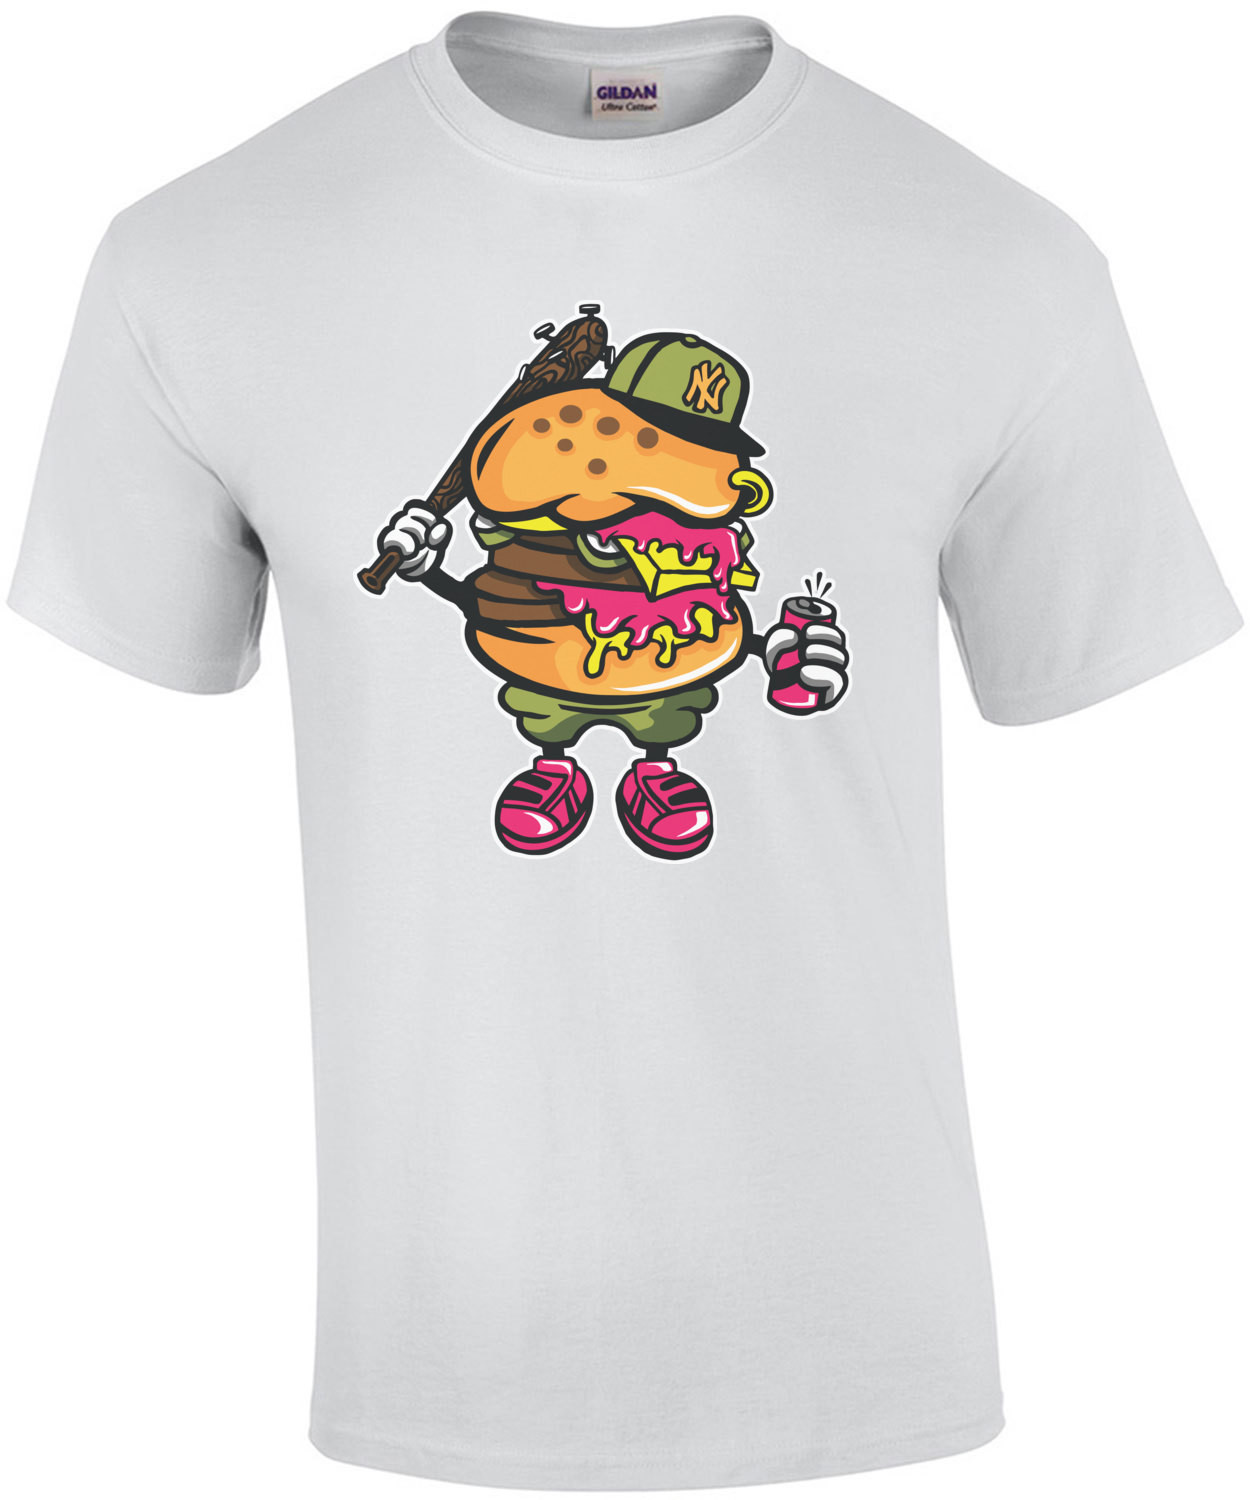 Retro Thuggish New York Burger T-Shirt